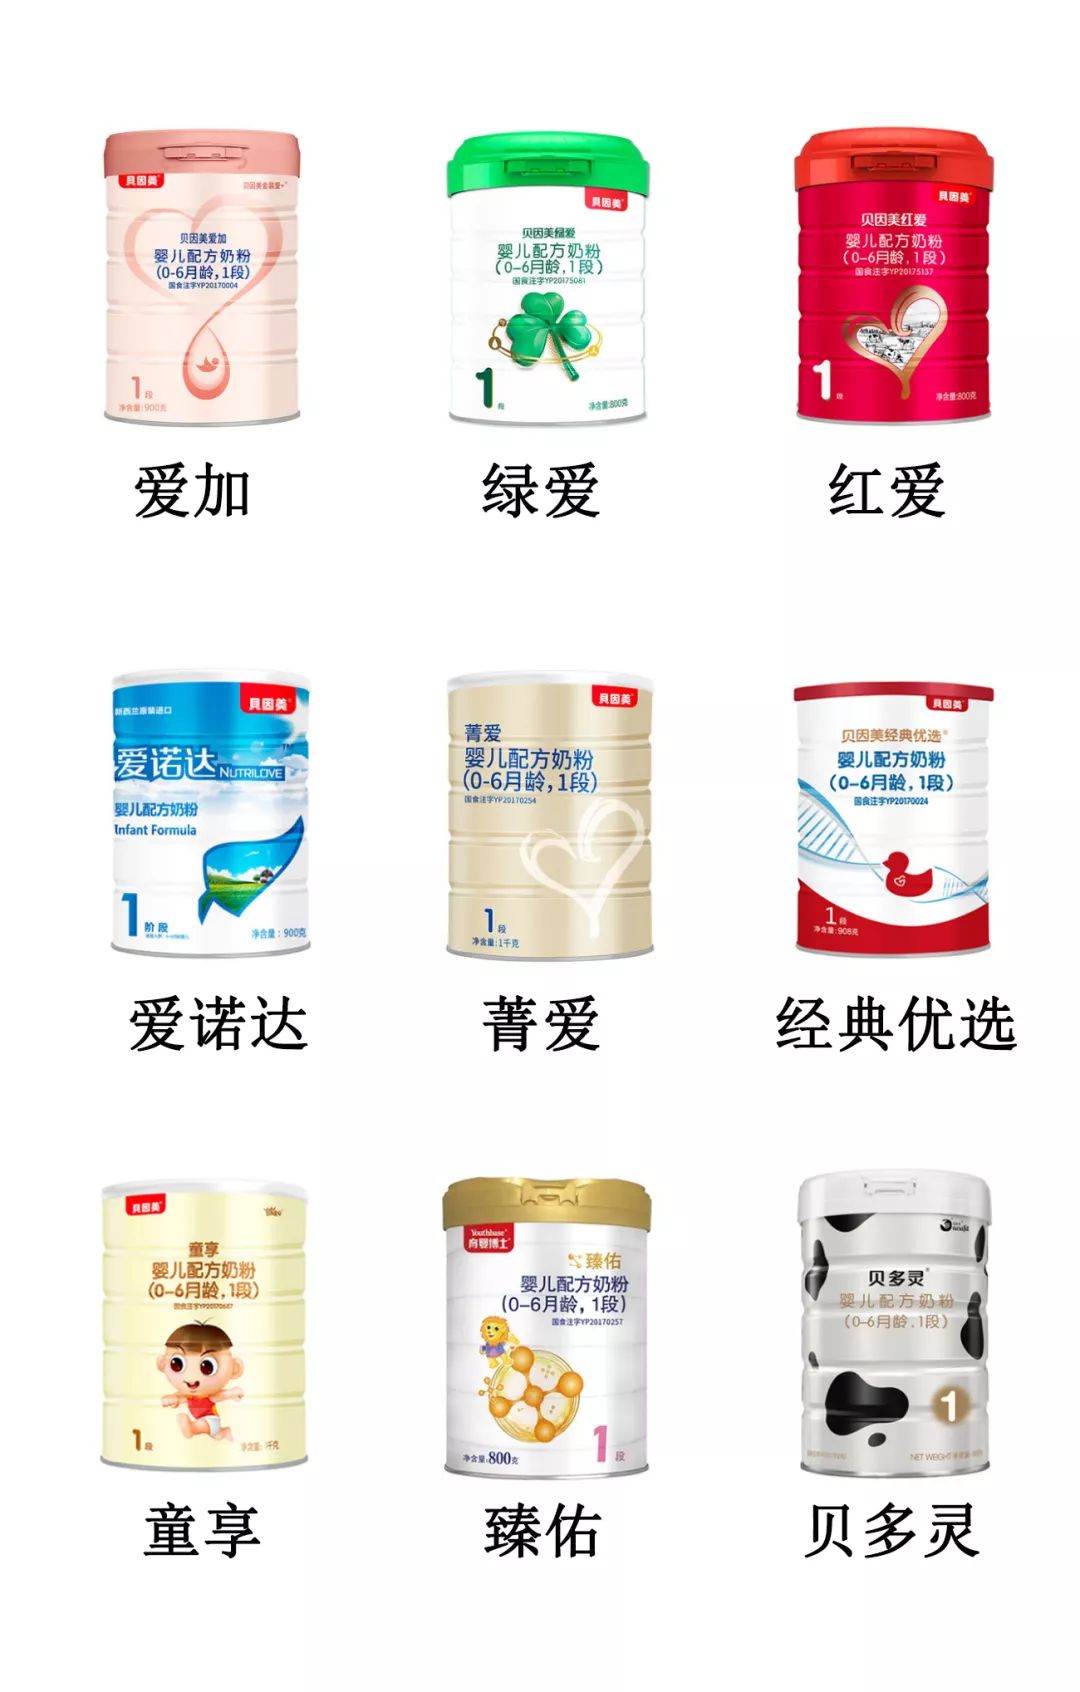 贝因美9大系列奶粉评测:当年的 国产第一品牌